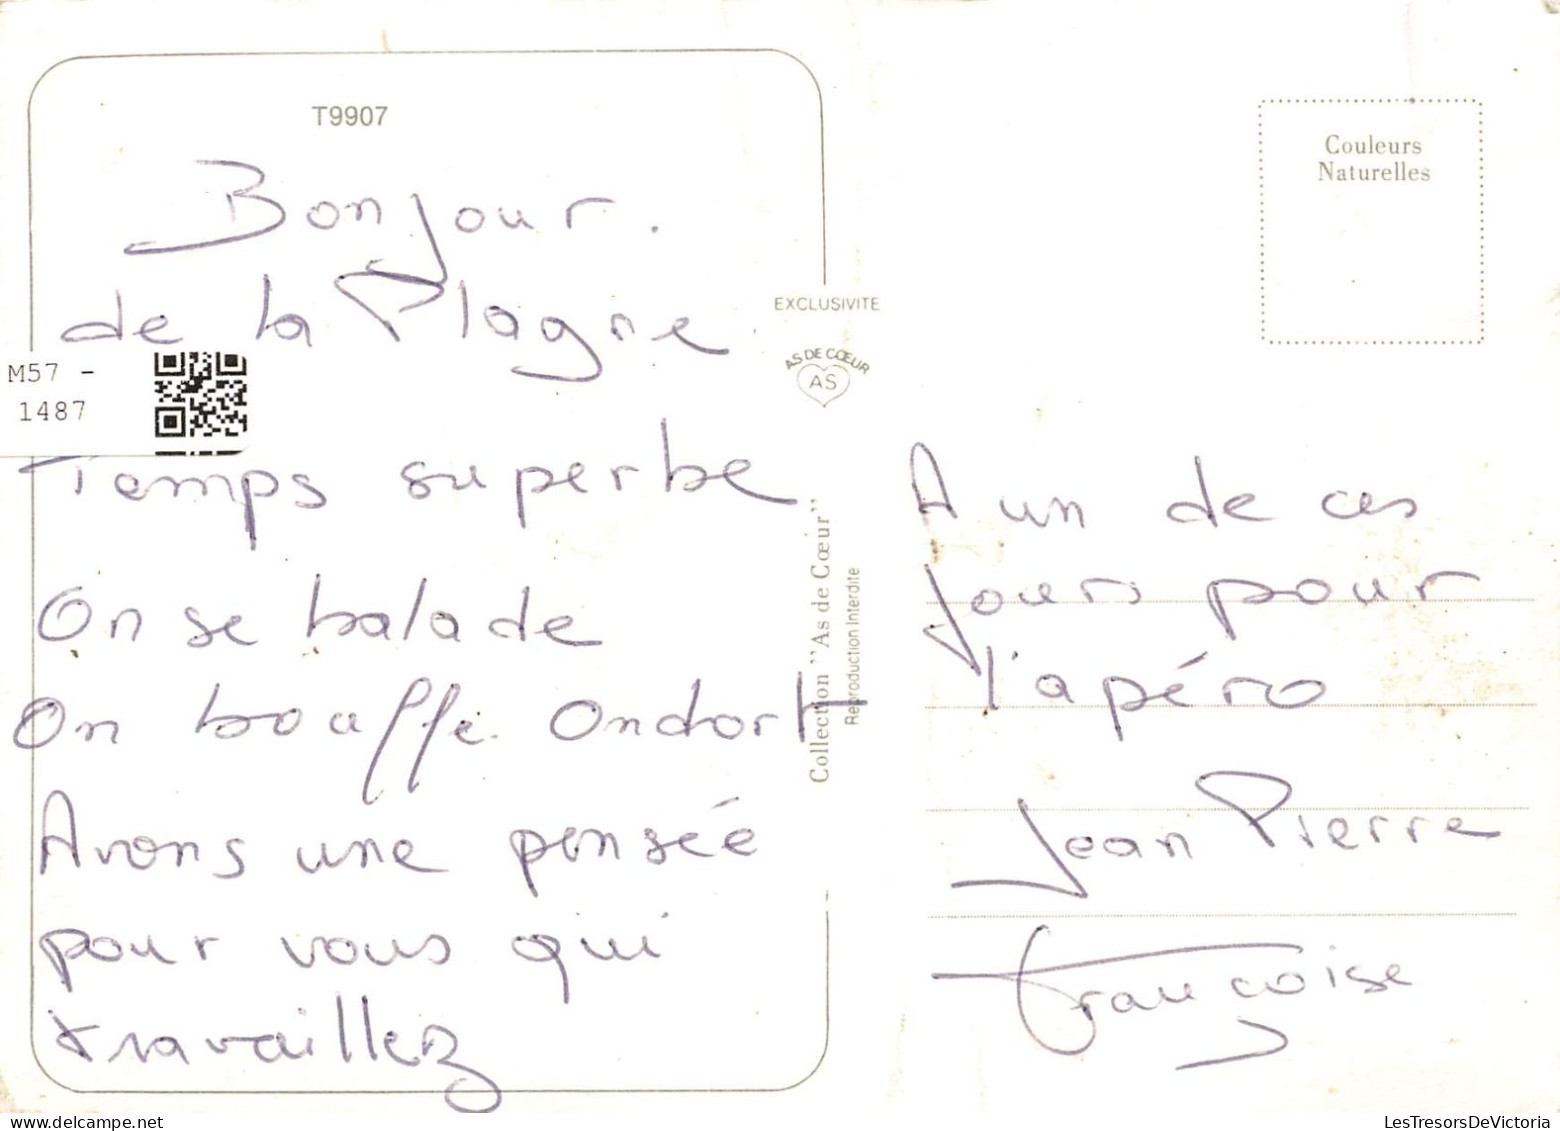 HUMOUR - On S'en Balance On Est En Vacances - Carte Postale - Humour